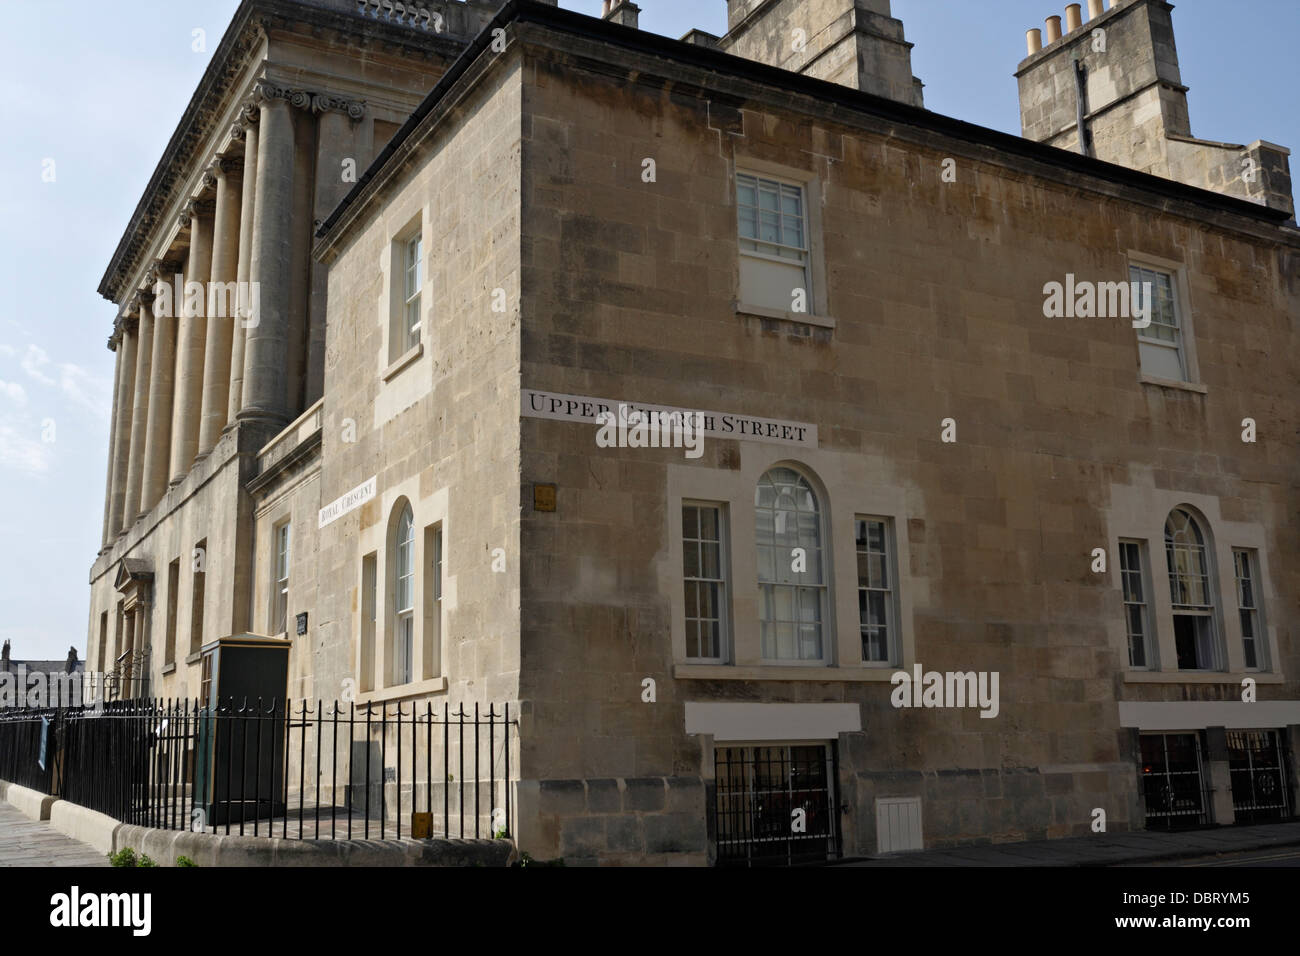 All'angolo tra Royal Crescent e Upper Church Street a Bath, Inghilterra, Regno Unito. Edificio in stile georgiano Foto Stock